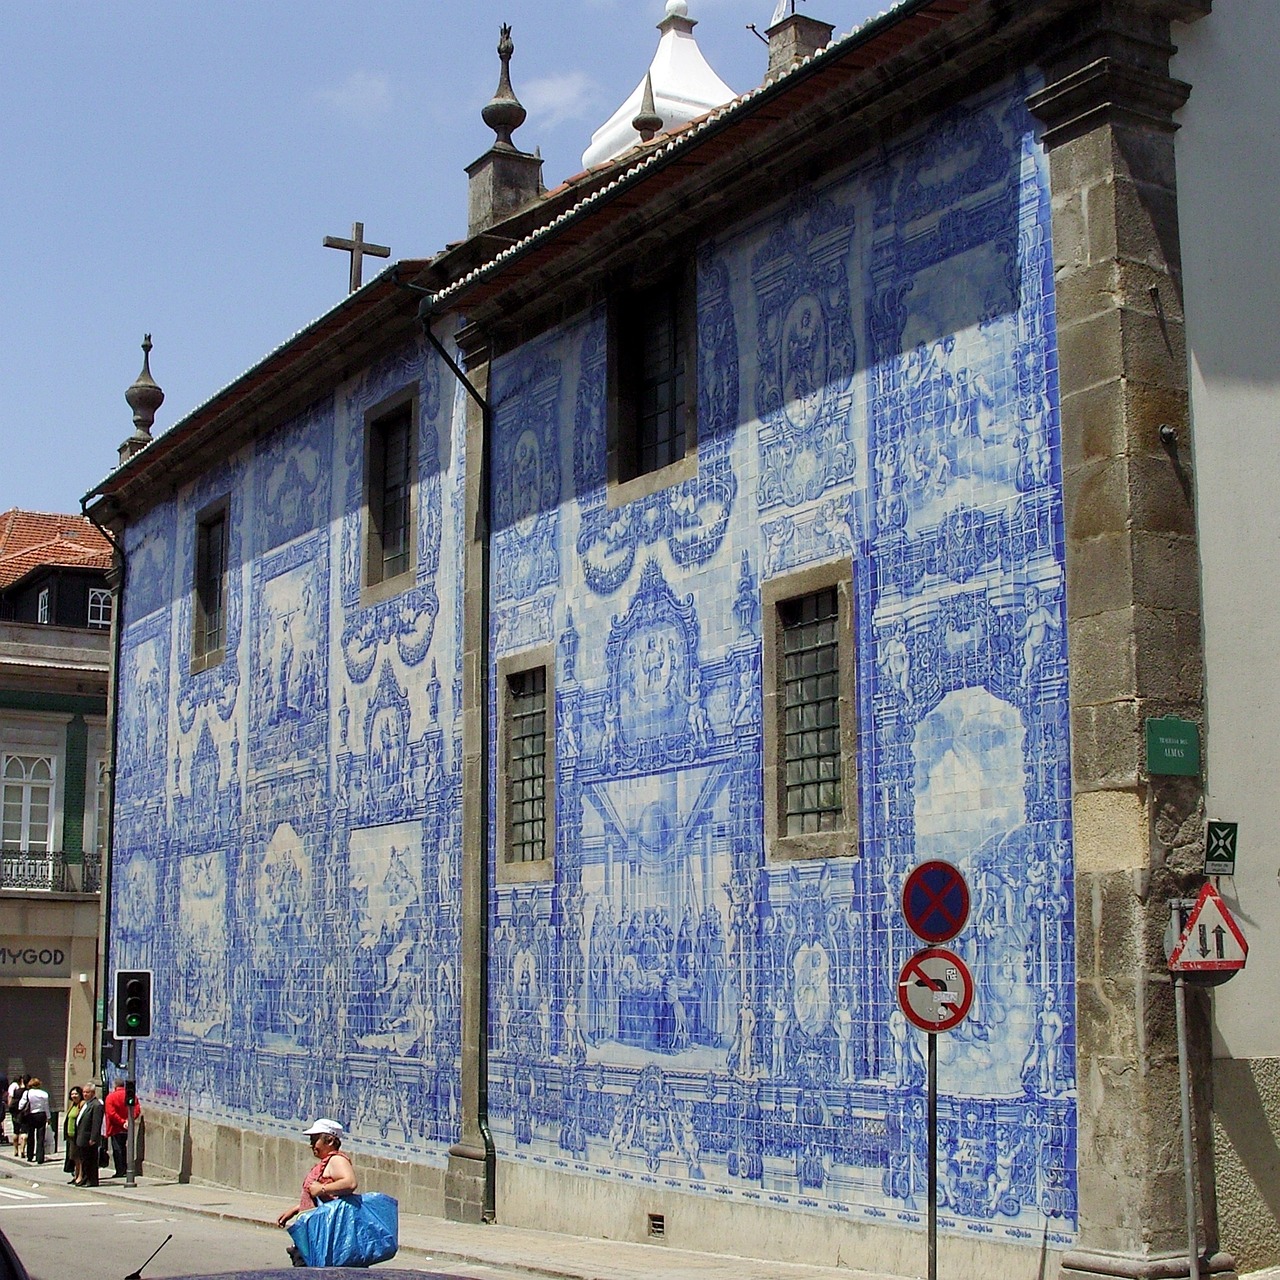 Blauwe tegeltjes is een kenmerk van noord Portugal